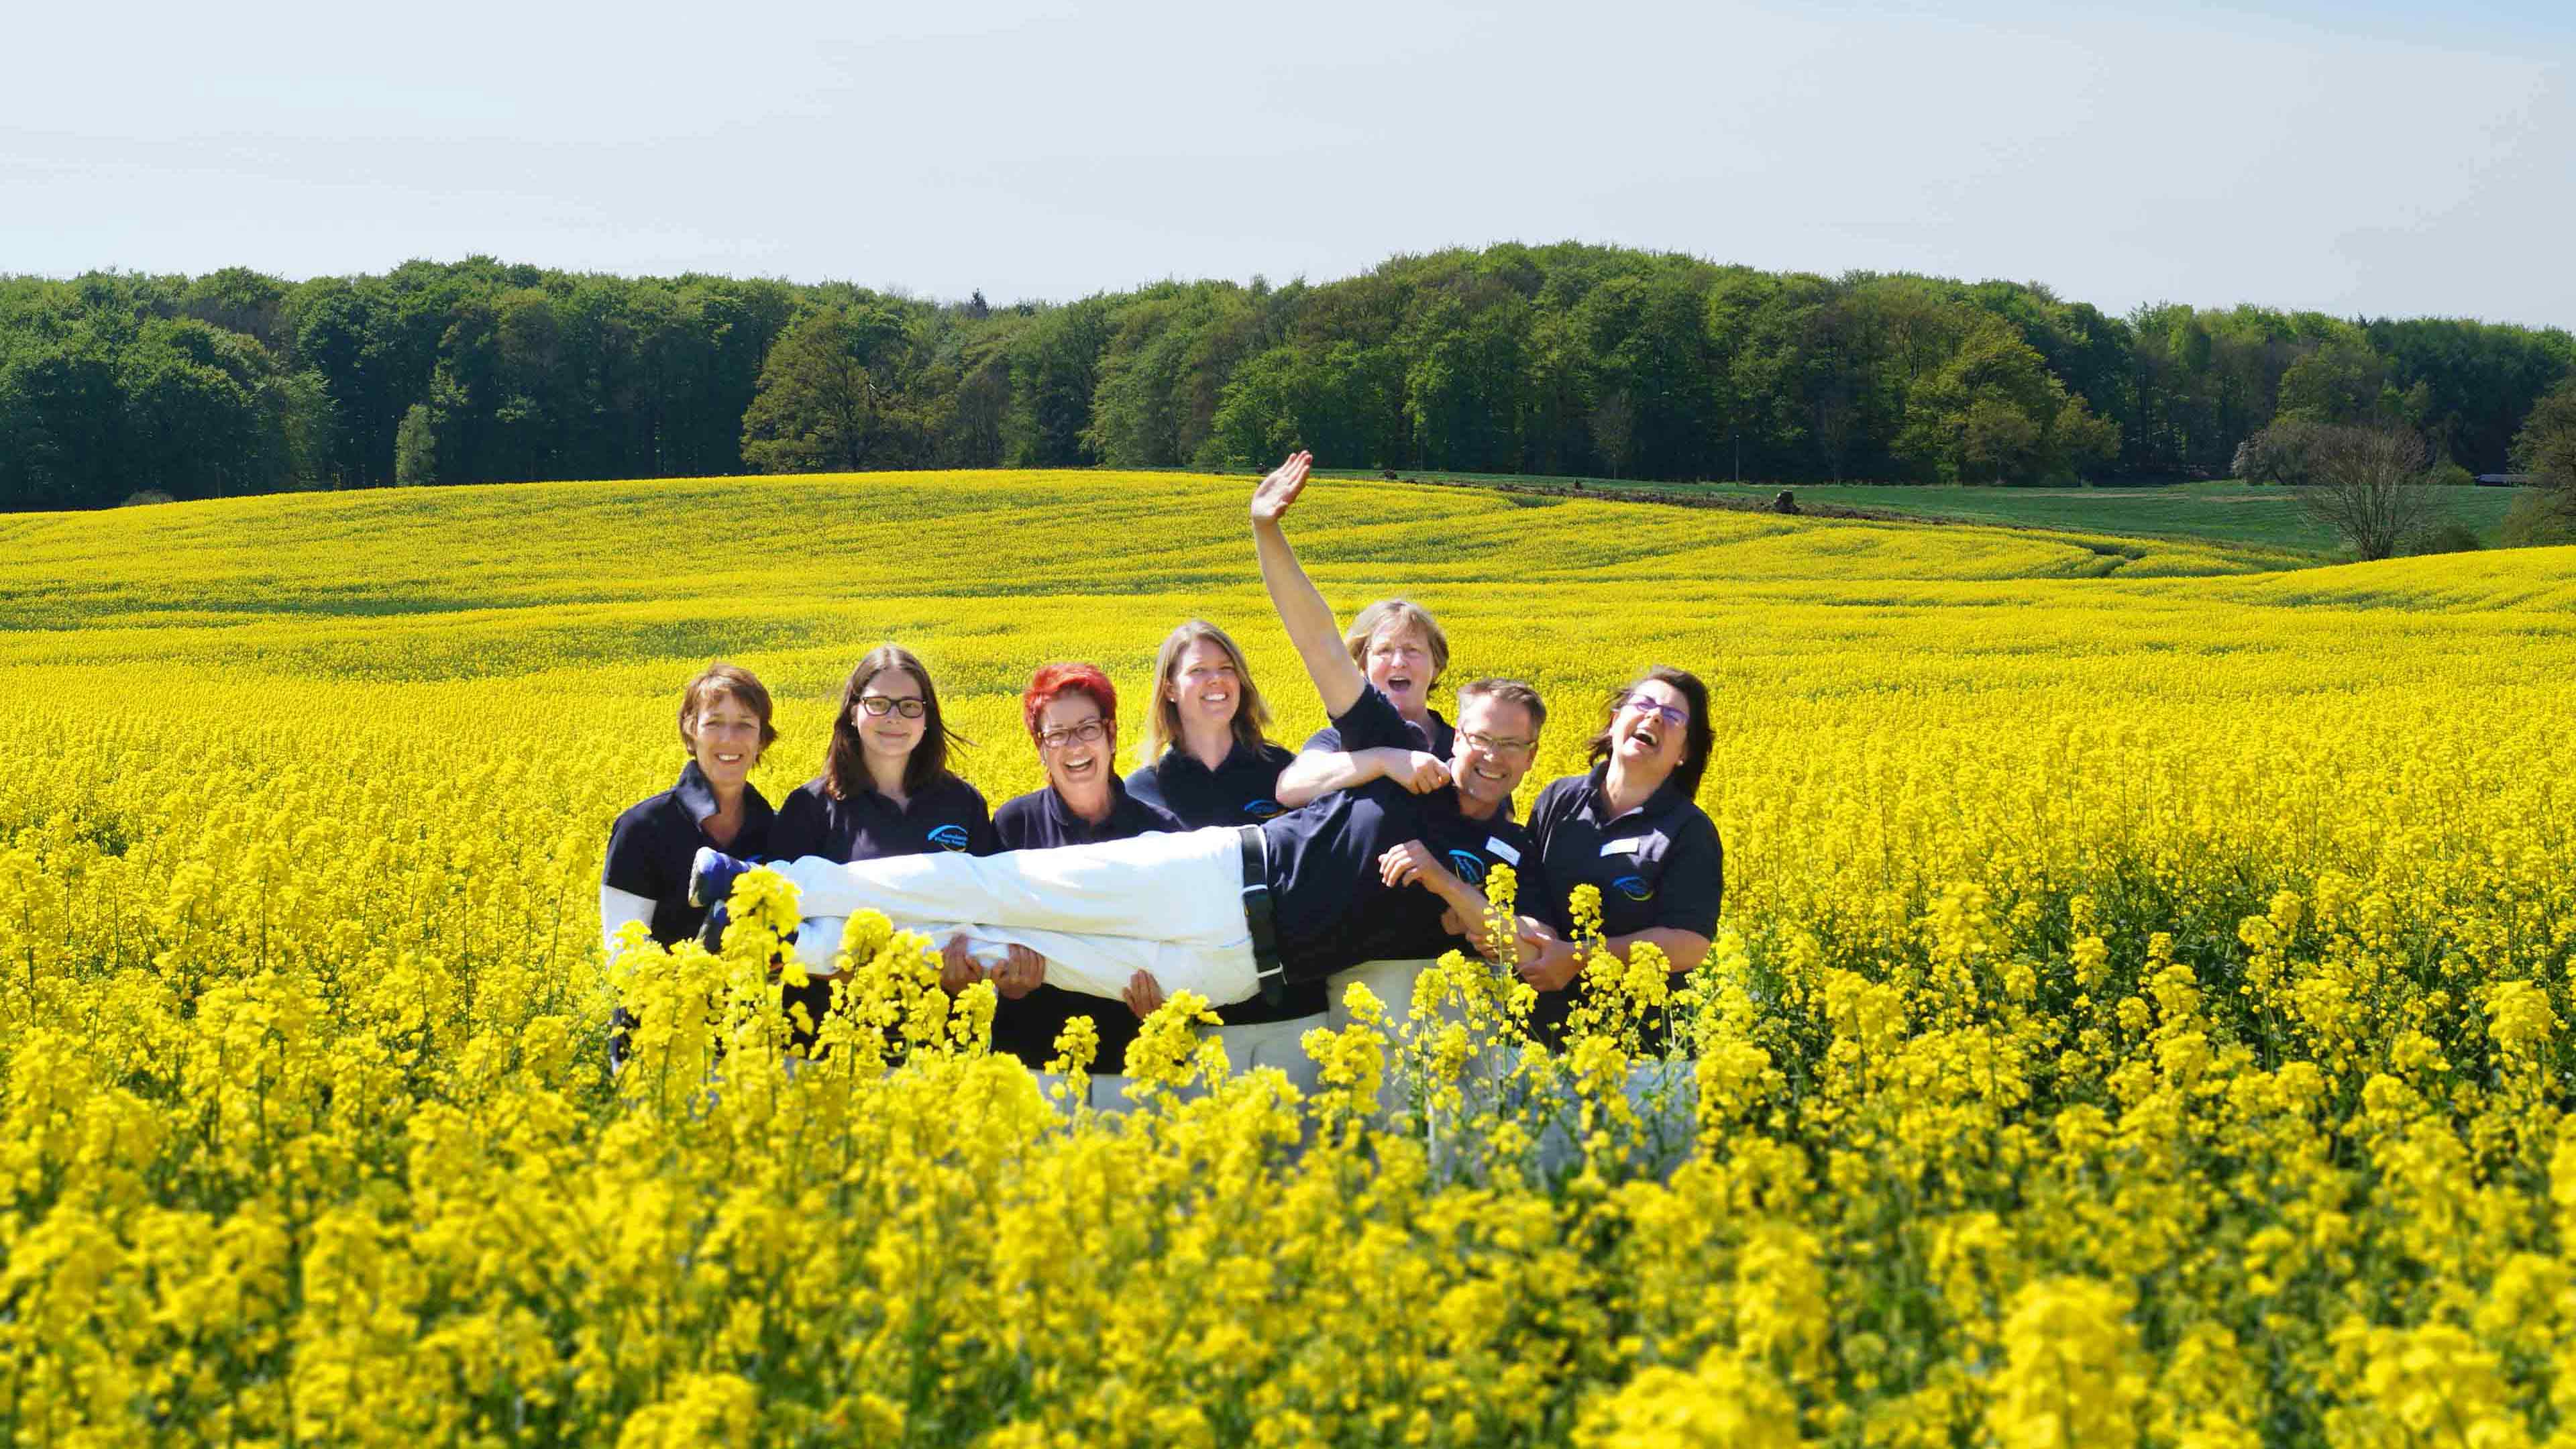 Sechs lachende Mitarbeiter stehen im gelben Rapsfeld und halten eine Person quer vor sich hoch